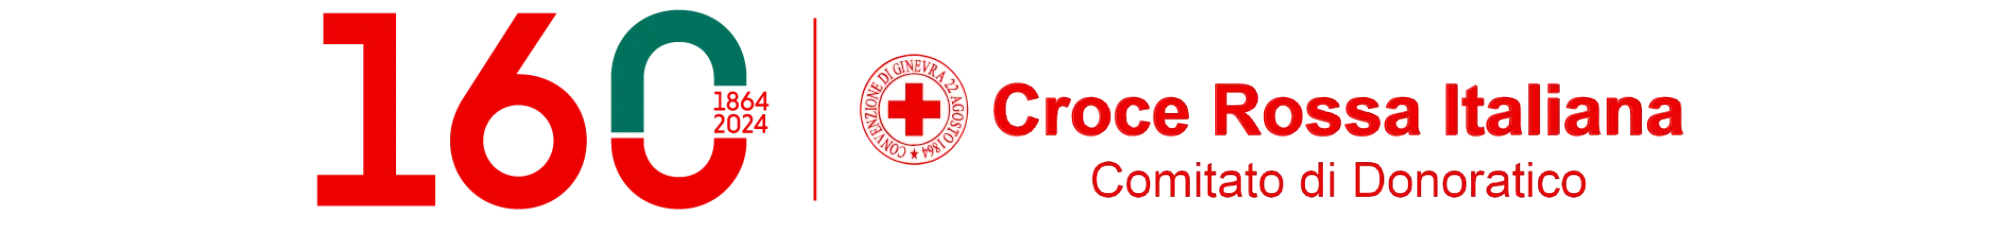 Croce Rossa Italiana - Comitato di Donoratico